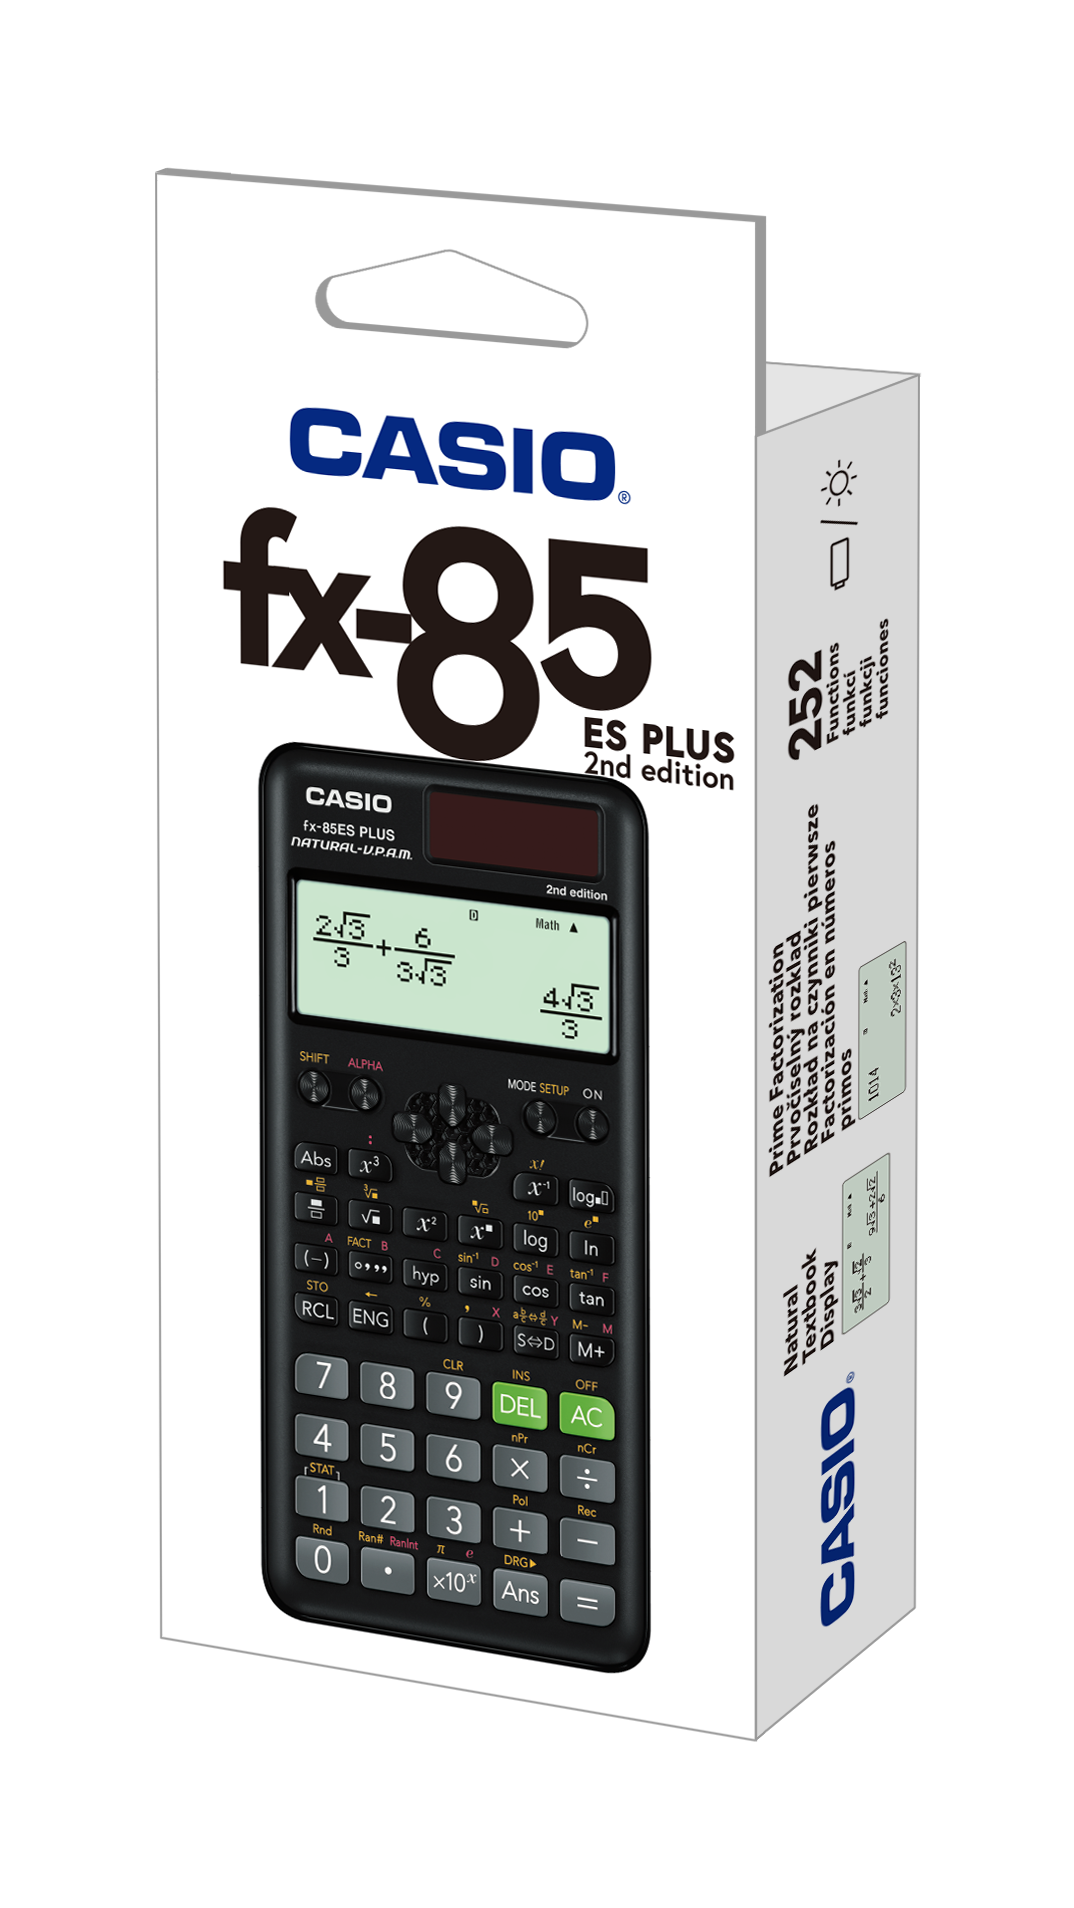 blad Centrum farvestof Merit-Trading Office Supplies Malta - CASIO calculator (d) FX-85ES PLUS 2 -  252 F